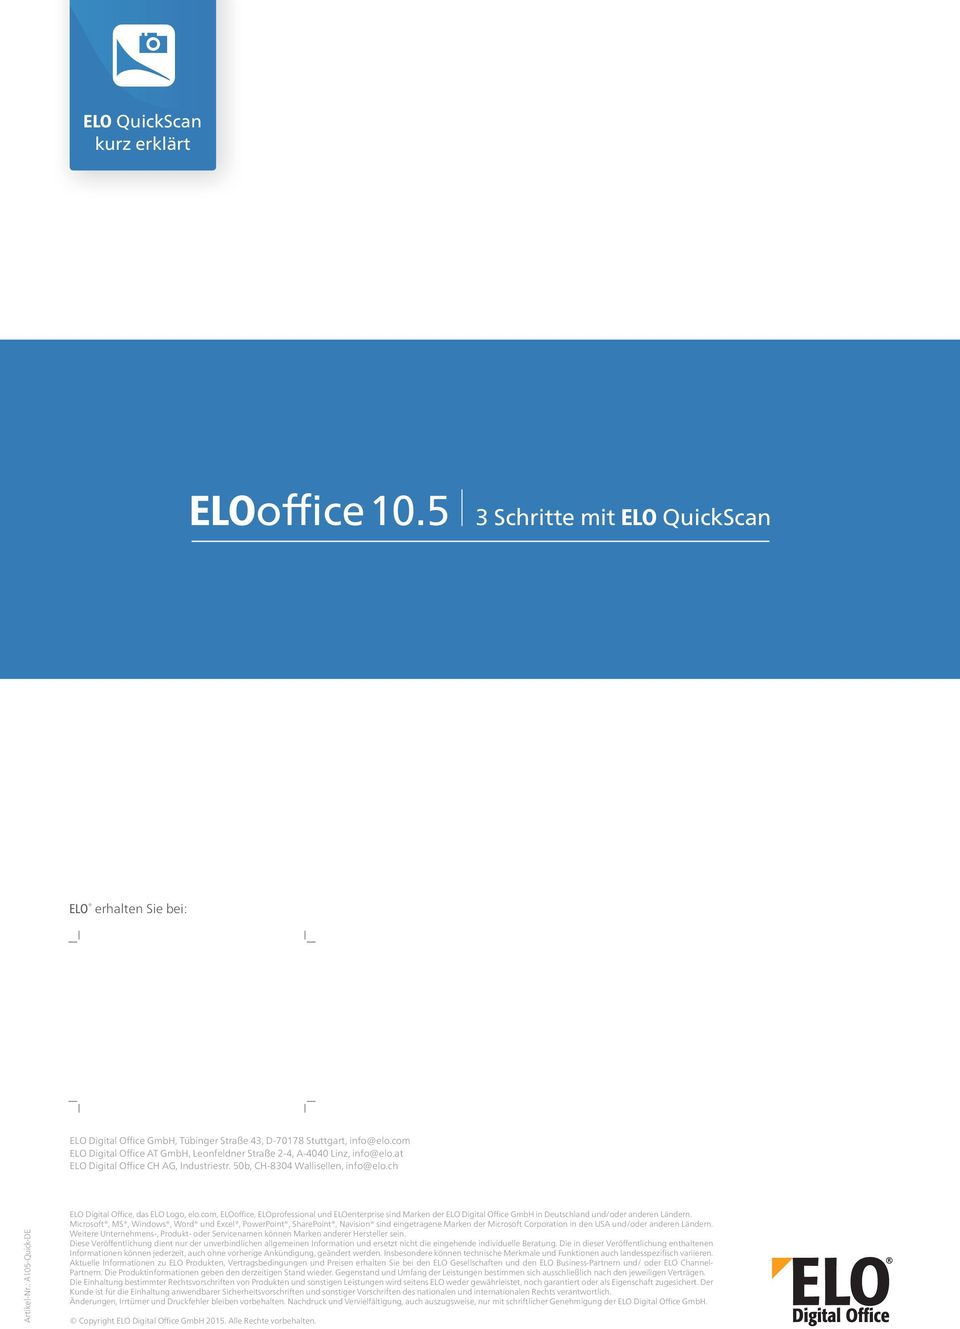 : A105-Quick-DE ELO Digital Office, das ELO Logo, elo.com, ELOoffice, ELOprofessional und ELOenterprise sind Marken der ELO Digital Office GmbH in Deutschland und/oder anderen Ländern.